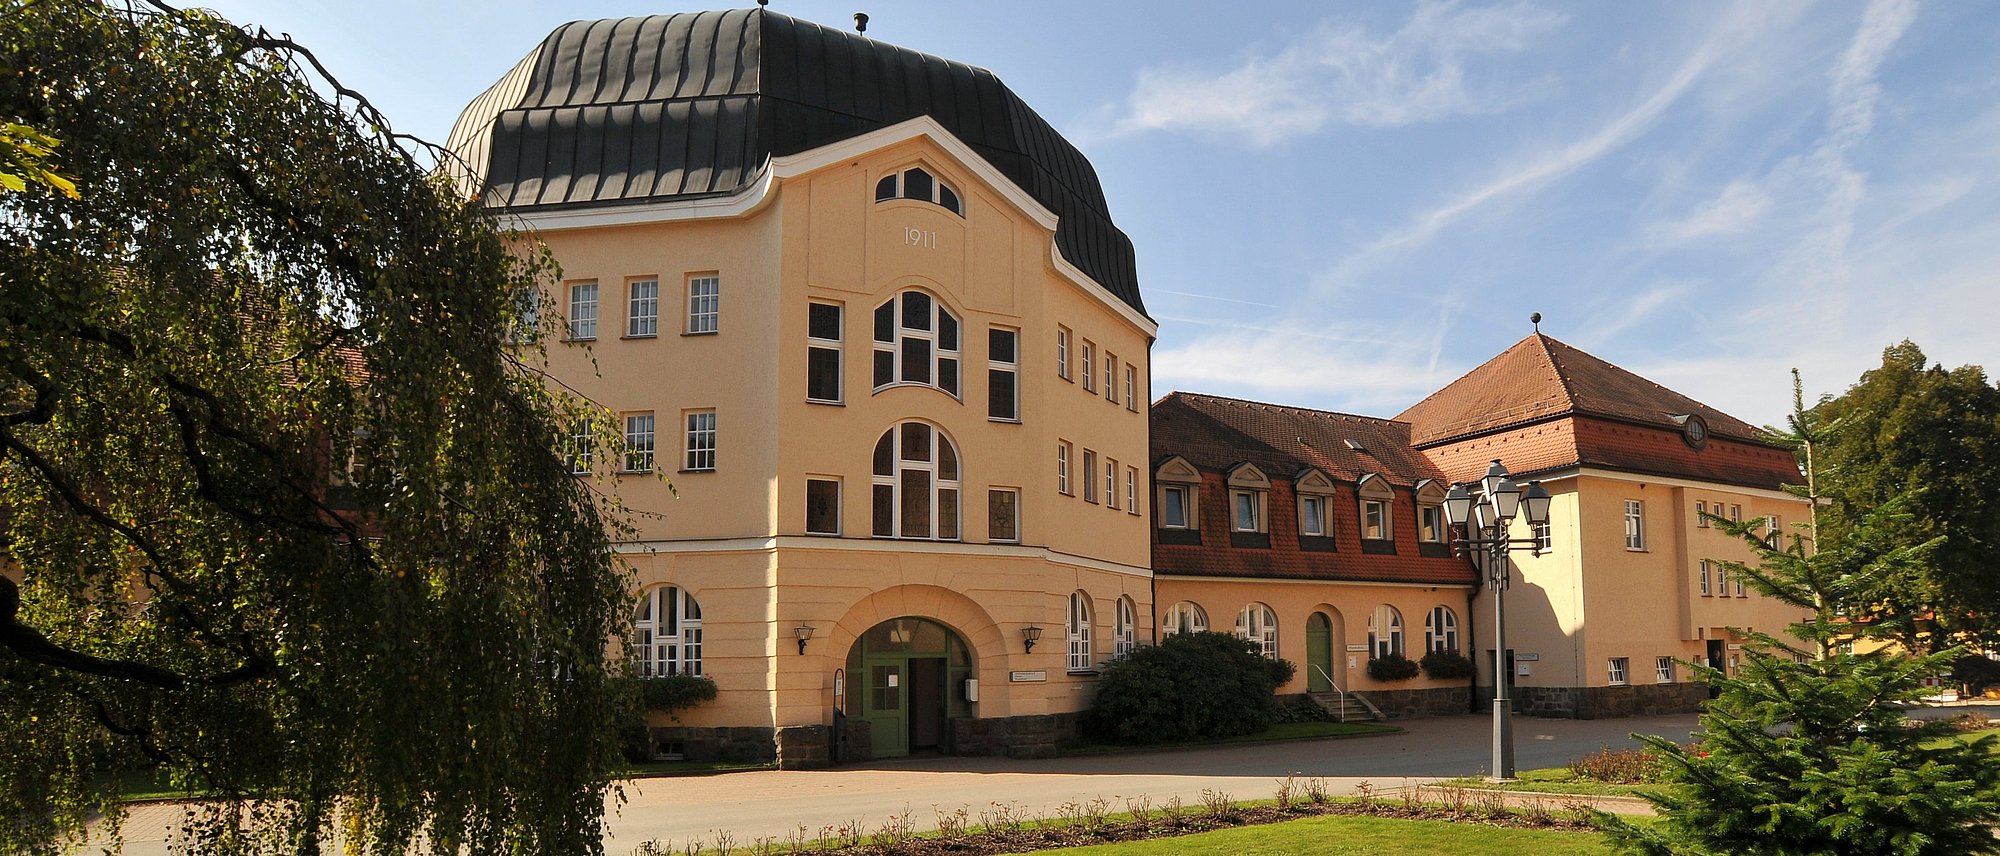 Kuppelsaalgebäude Wöllershof (Frank Hübler | medbo)